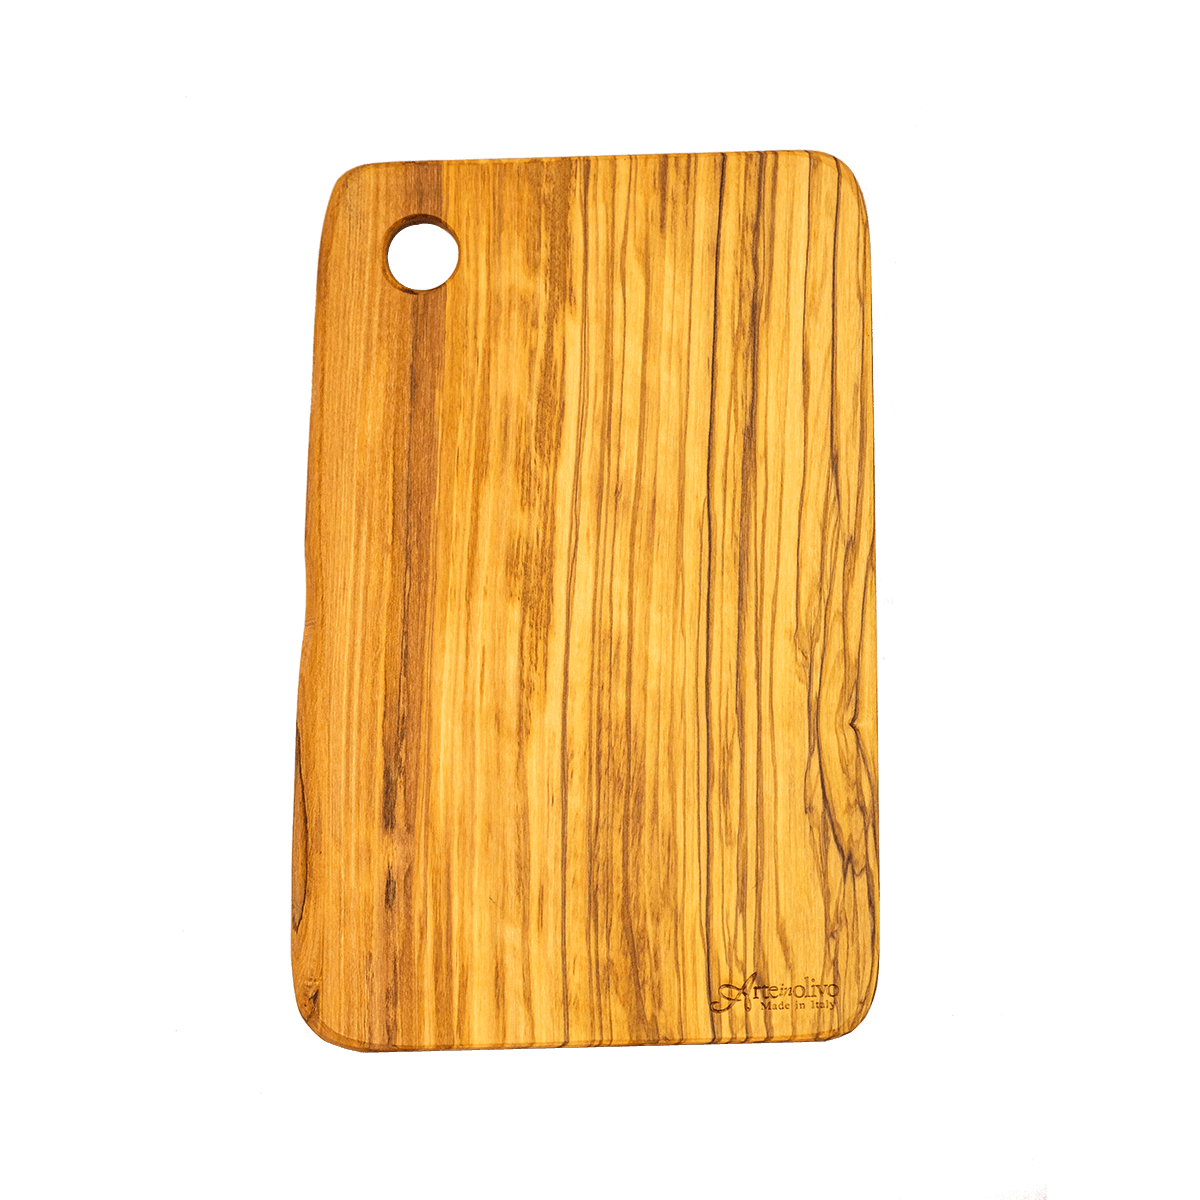 Tagliere rustico in legno di olivo a prezzo conveniente in offerta